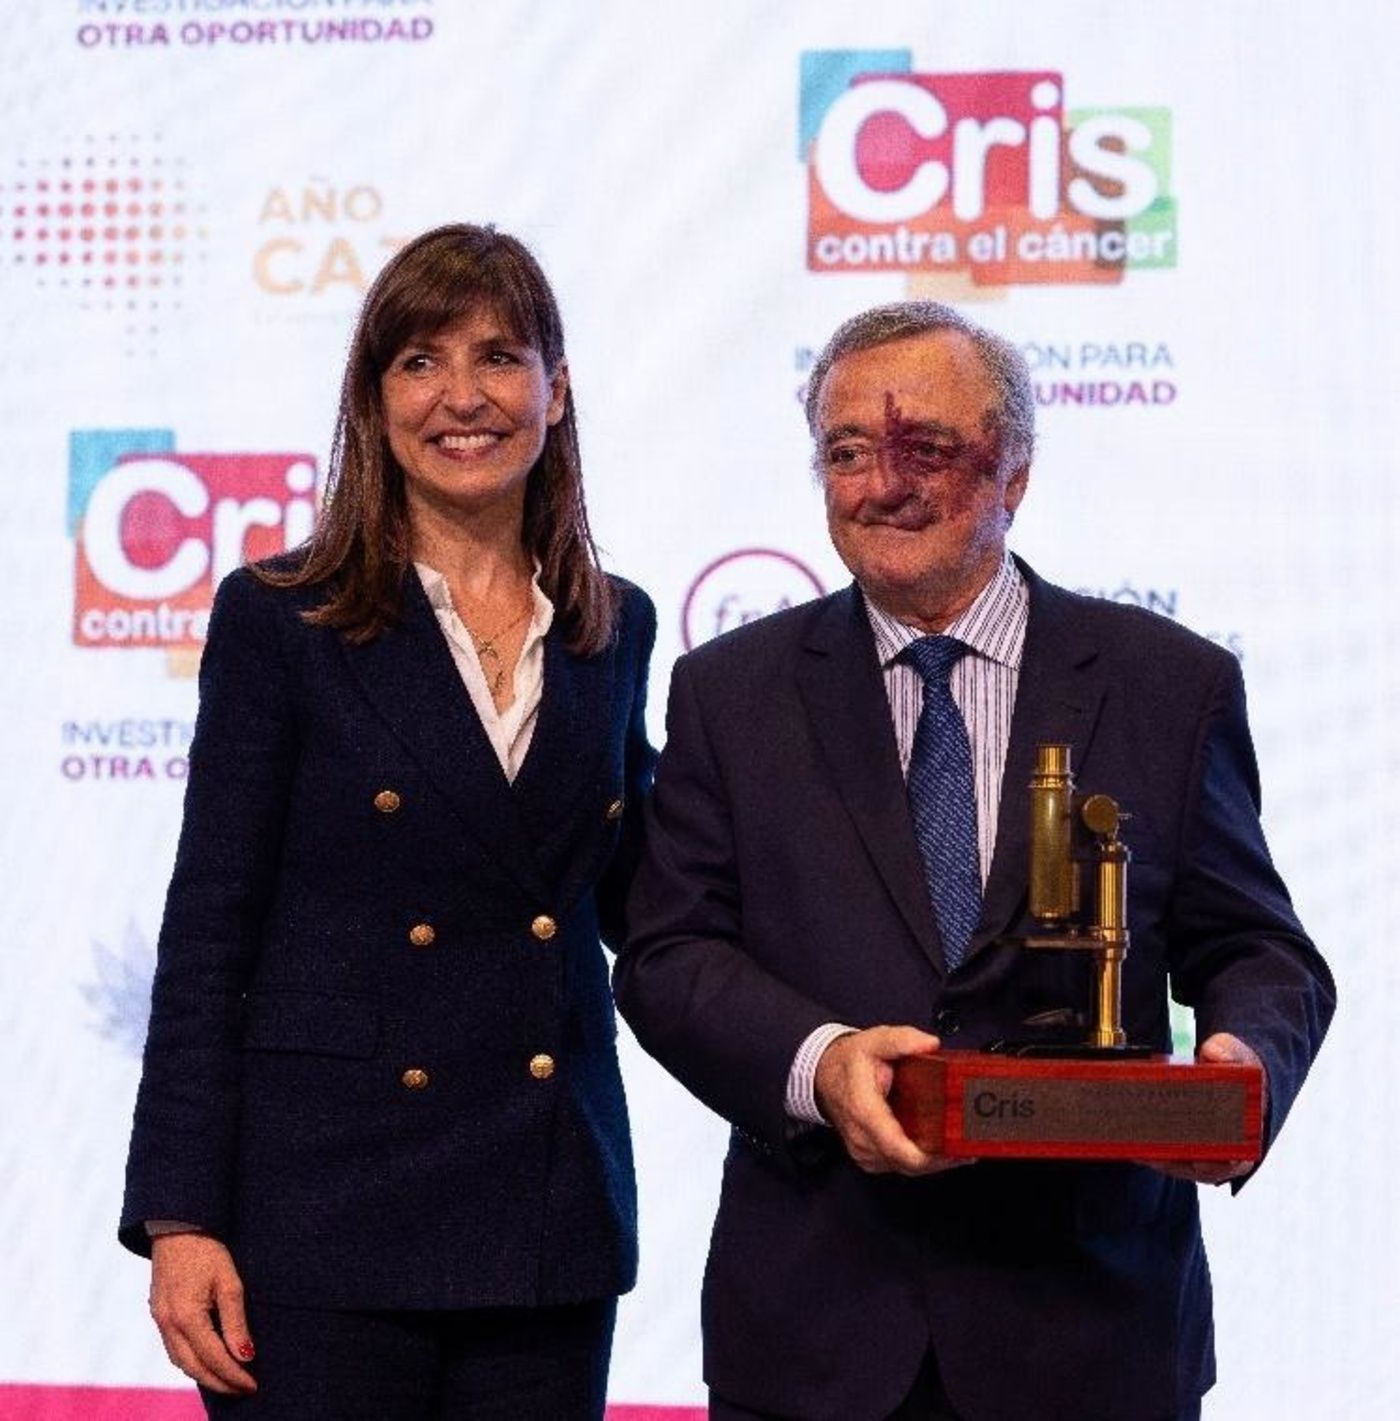 Mariano Barbacid dona parte de su herencia a la Fundación CRIS contra el cáncer (Europa Press)